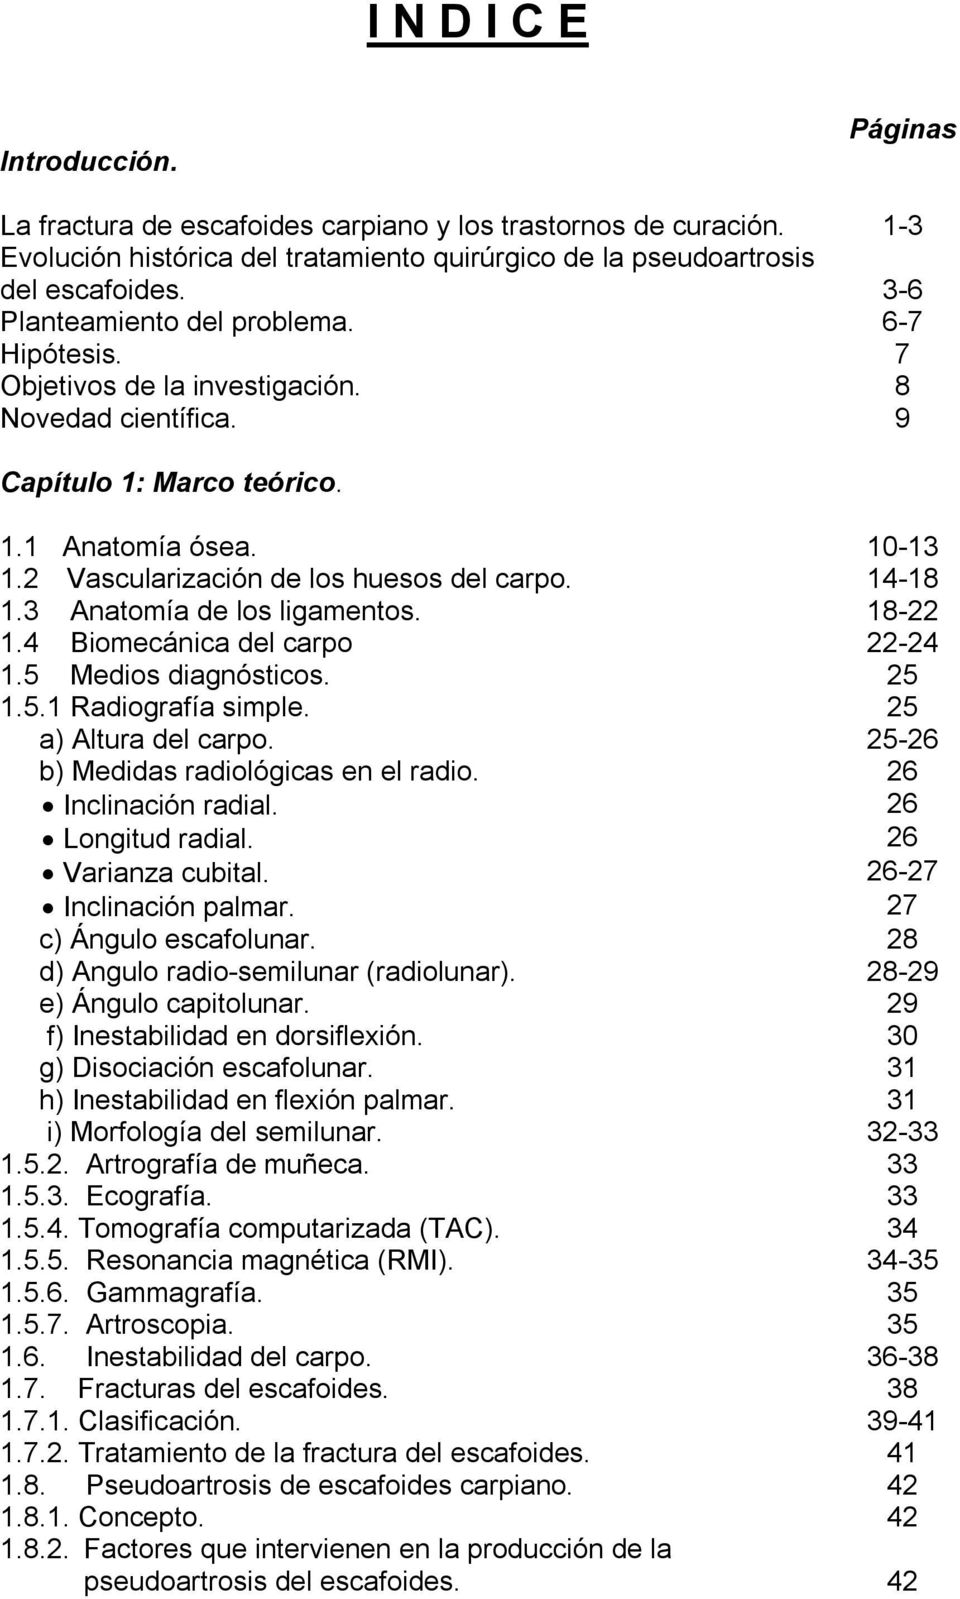 14-18 1.3 Anatomía de los ligamentos. 18-22 1.4 Biomecánica del carpo 22-24 1.5 Medios diagnósticos. 25 1.5.1 Radiografía simple. 25 a) Altura del carpo. 25-26 b) Medidas radiológicas en el radio.